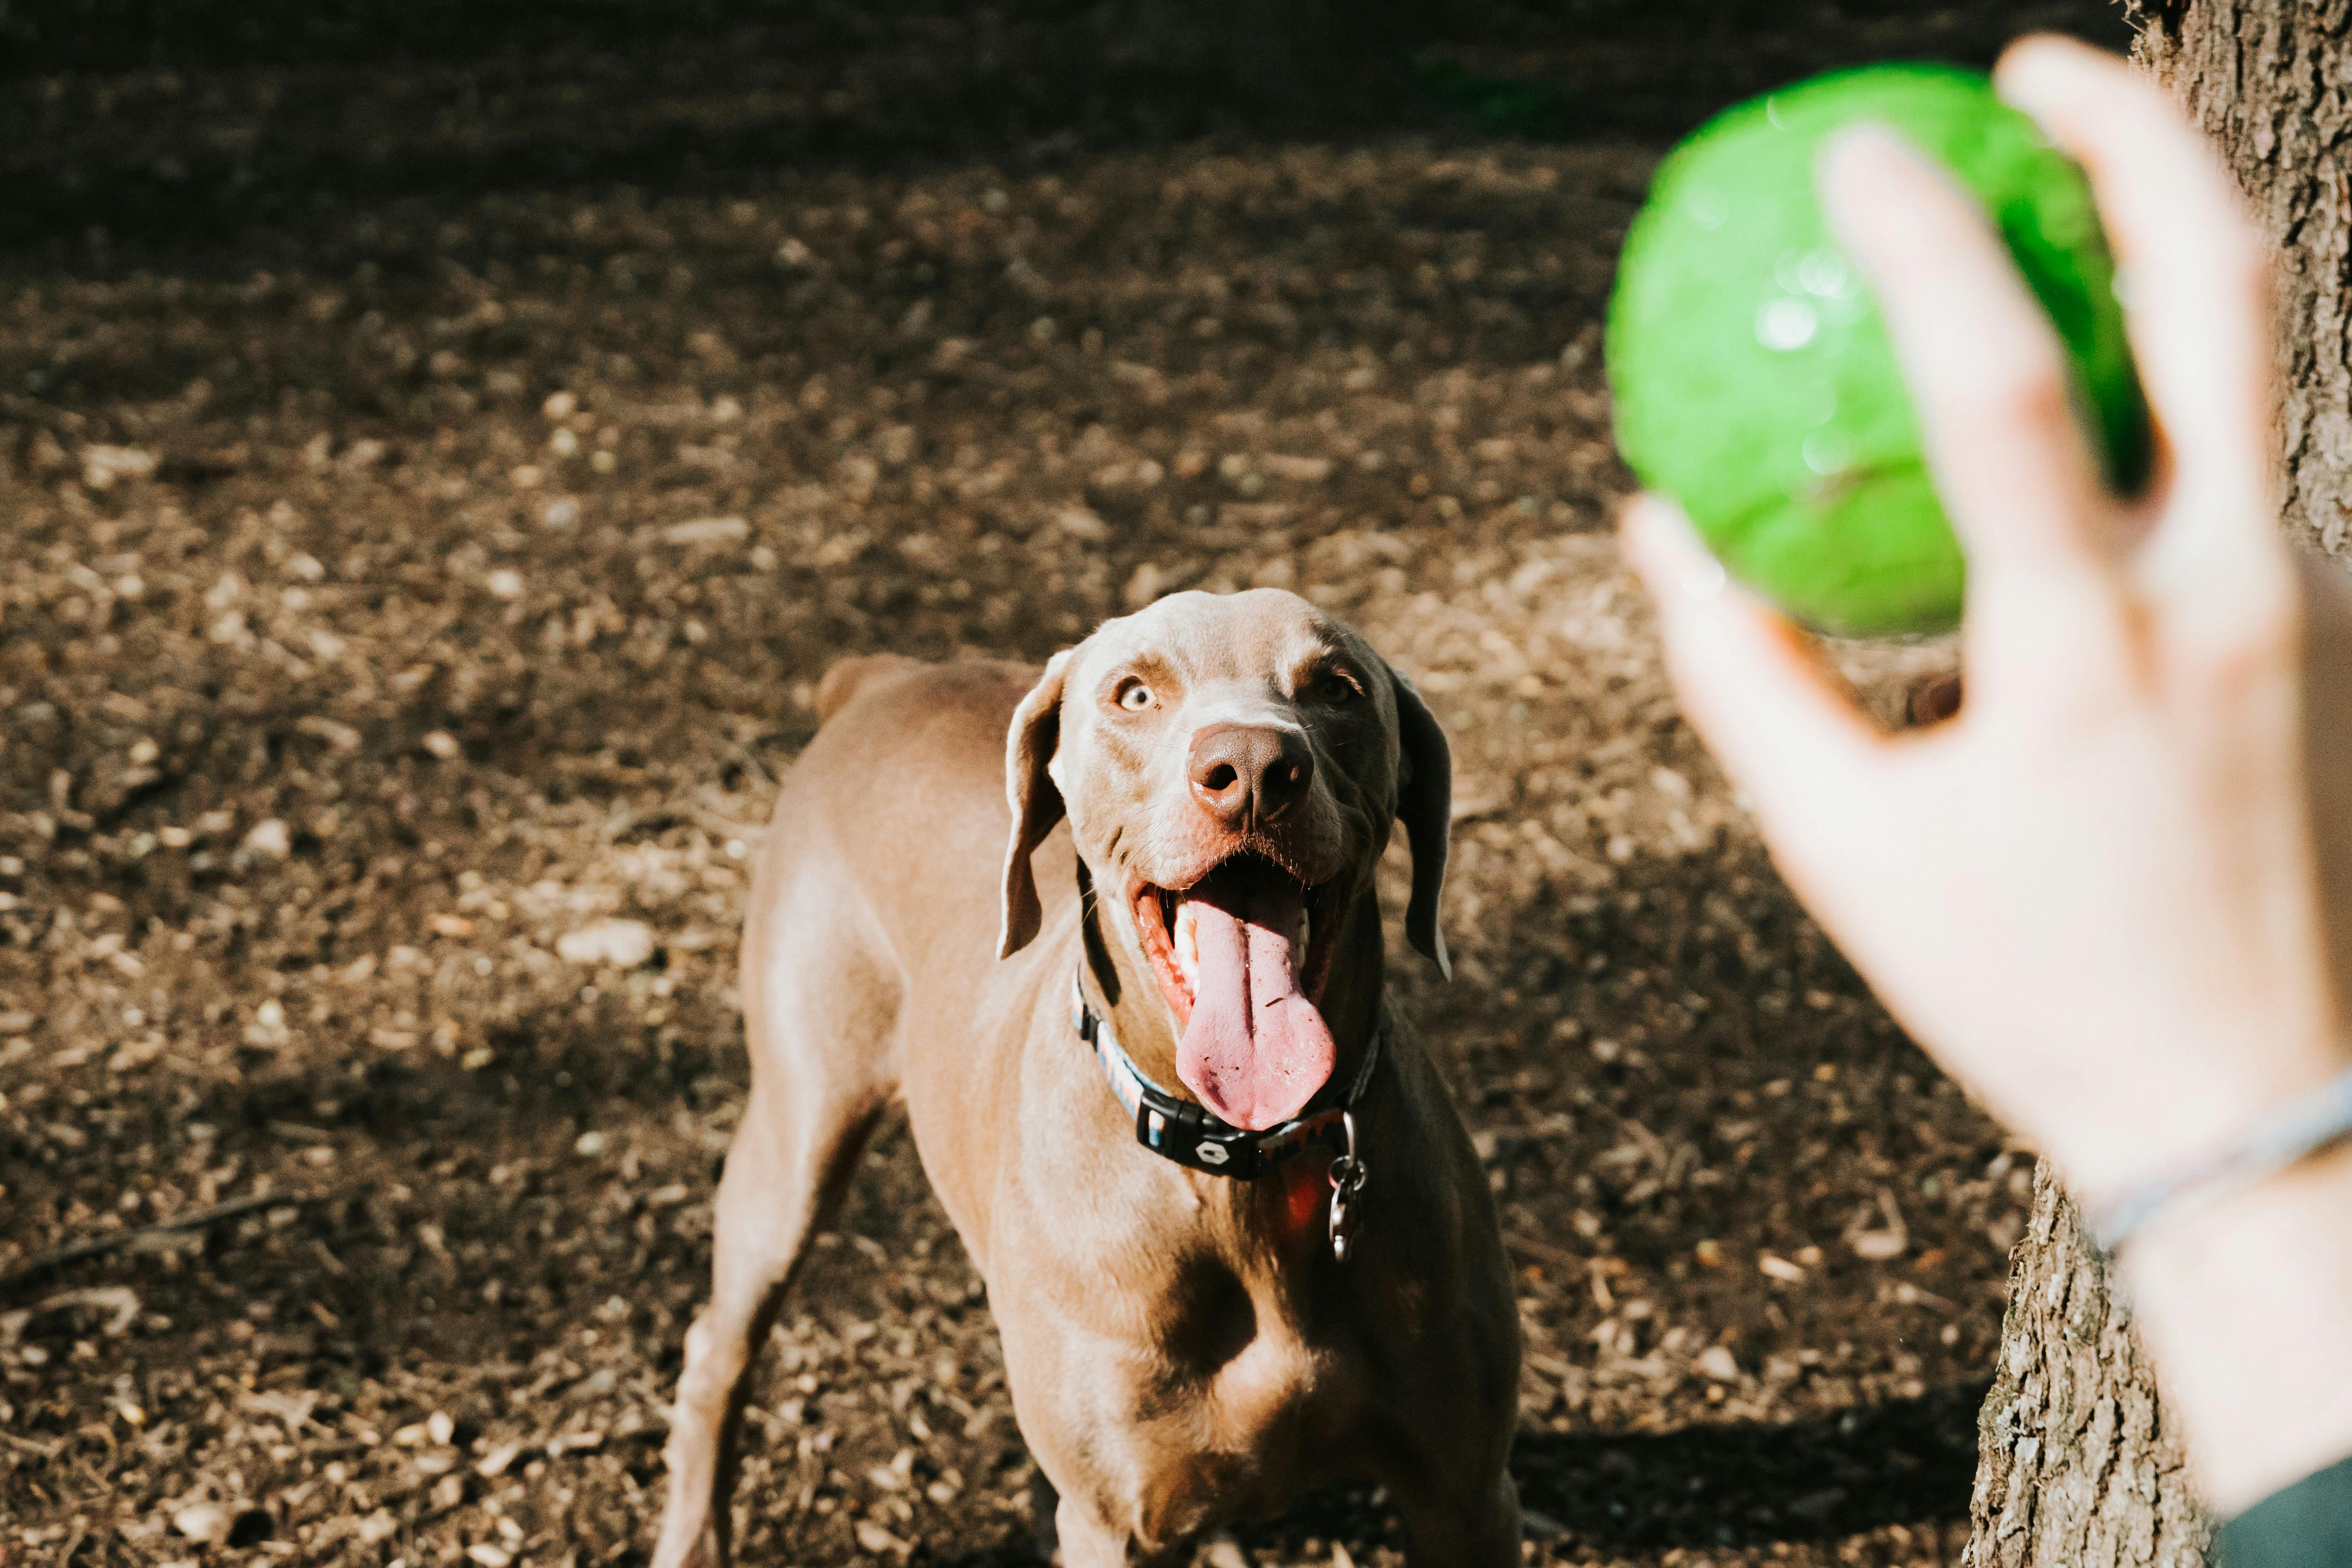 A dog expecting a ball throw